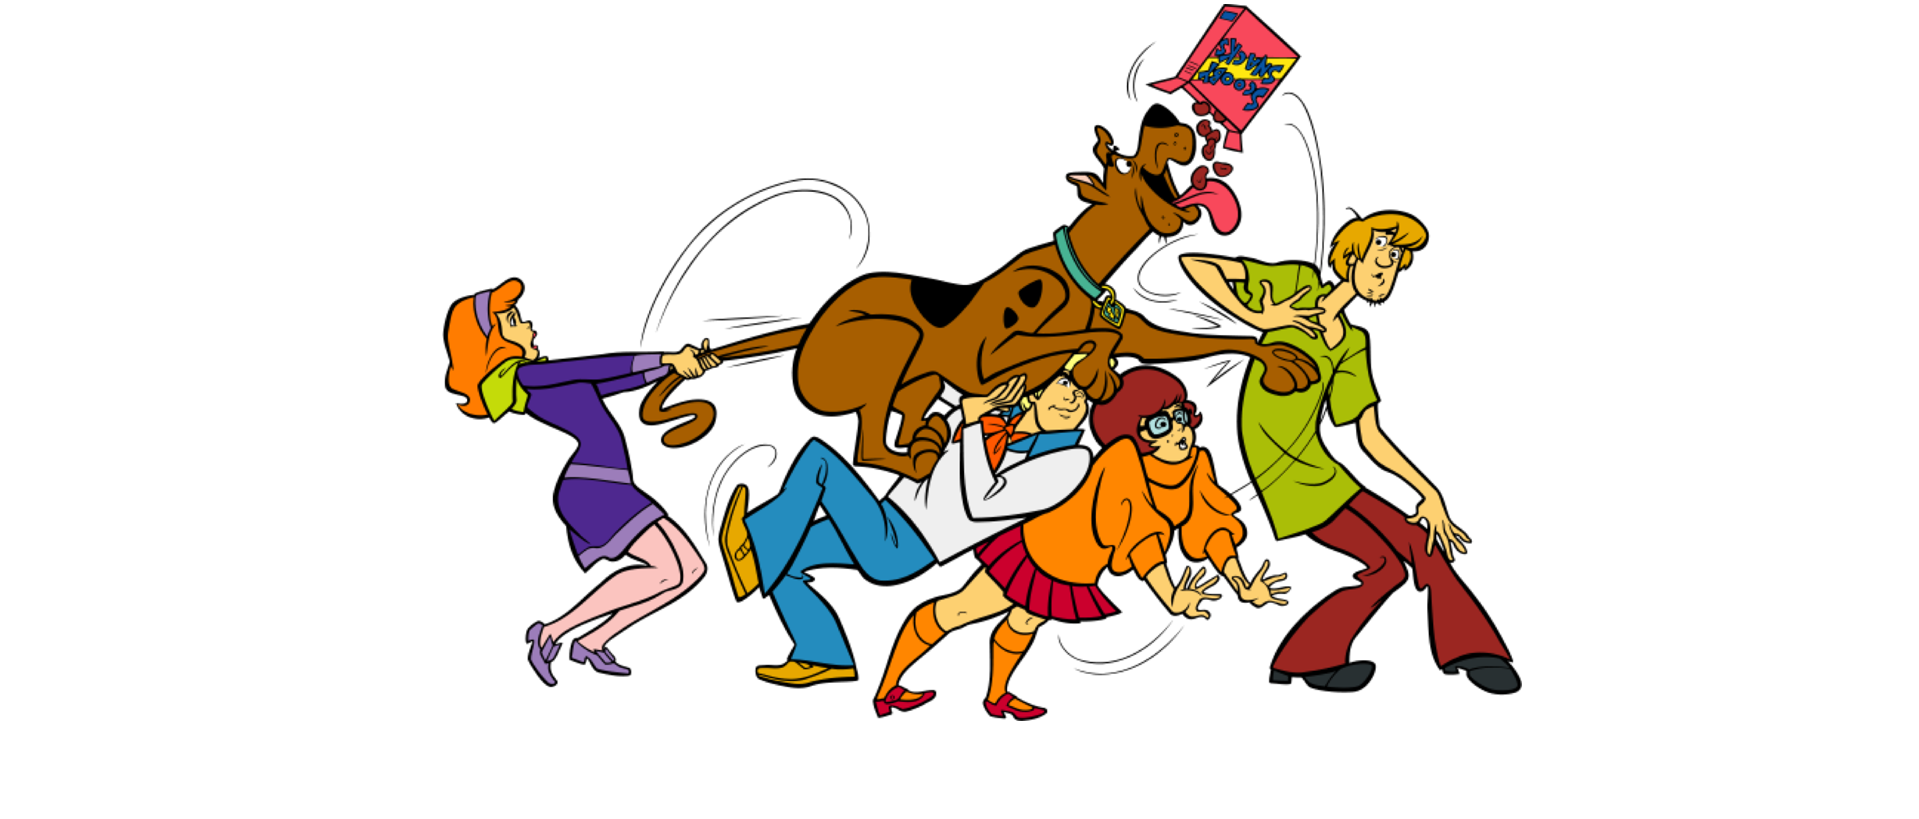 Scooby Doo Games, Videos & Downloads Online! - Cartoon Network